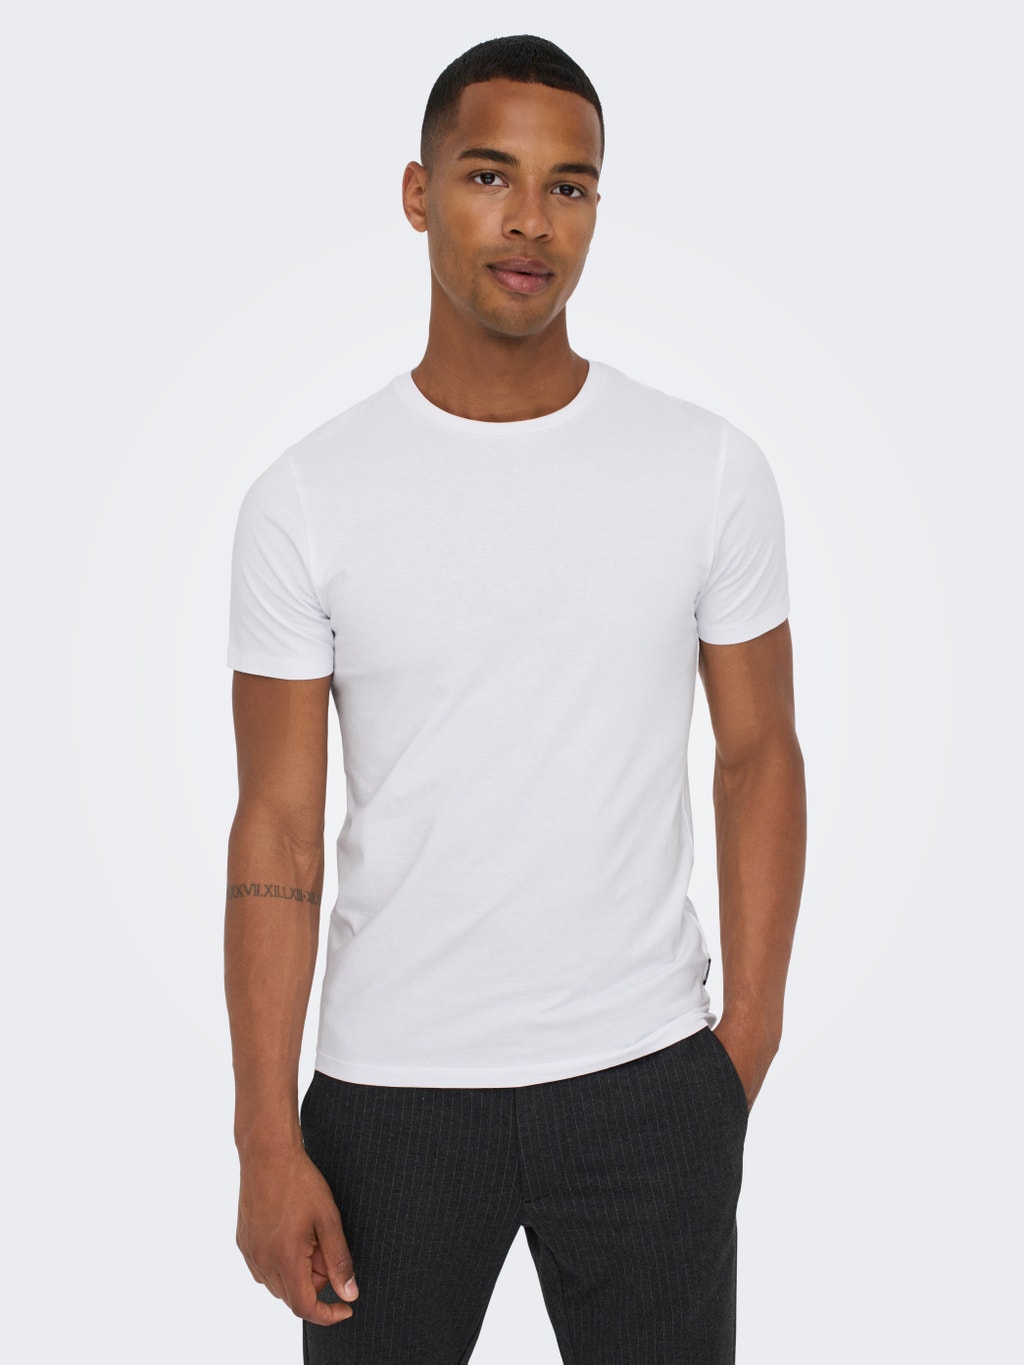 Mysterieus knal verkenner Slim Fit O-Neck T-Shirt | White | ONLY & SONS®